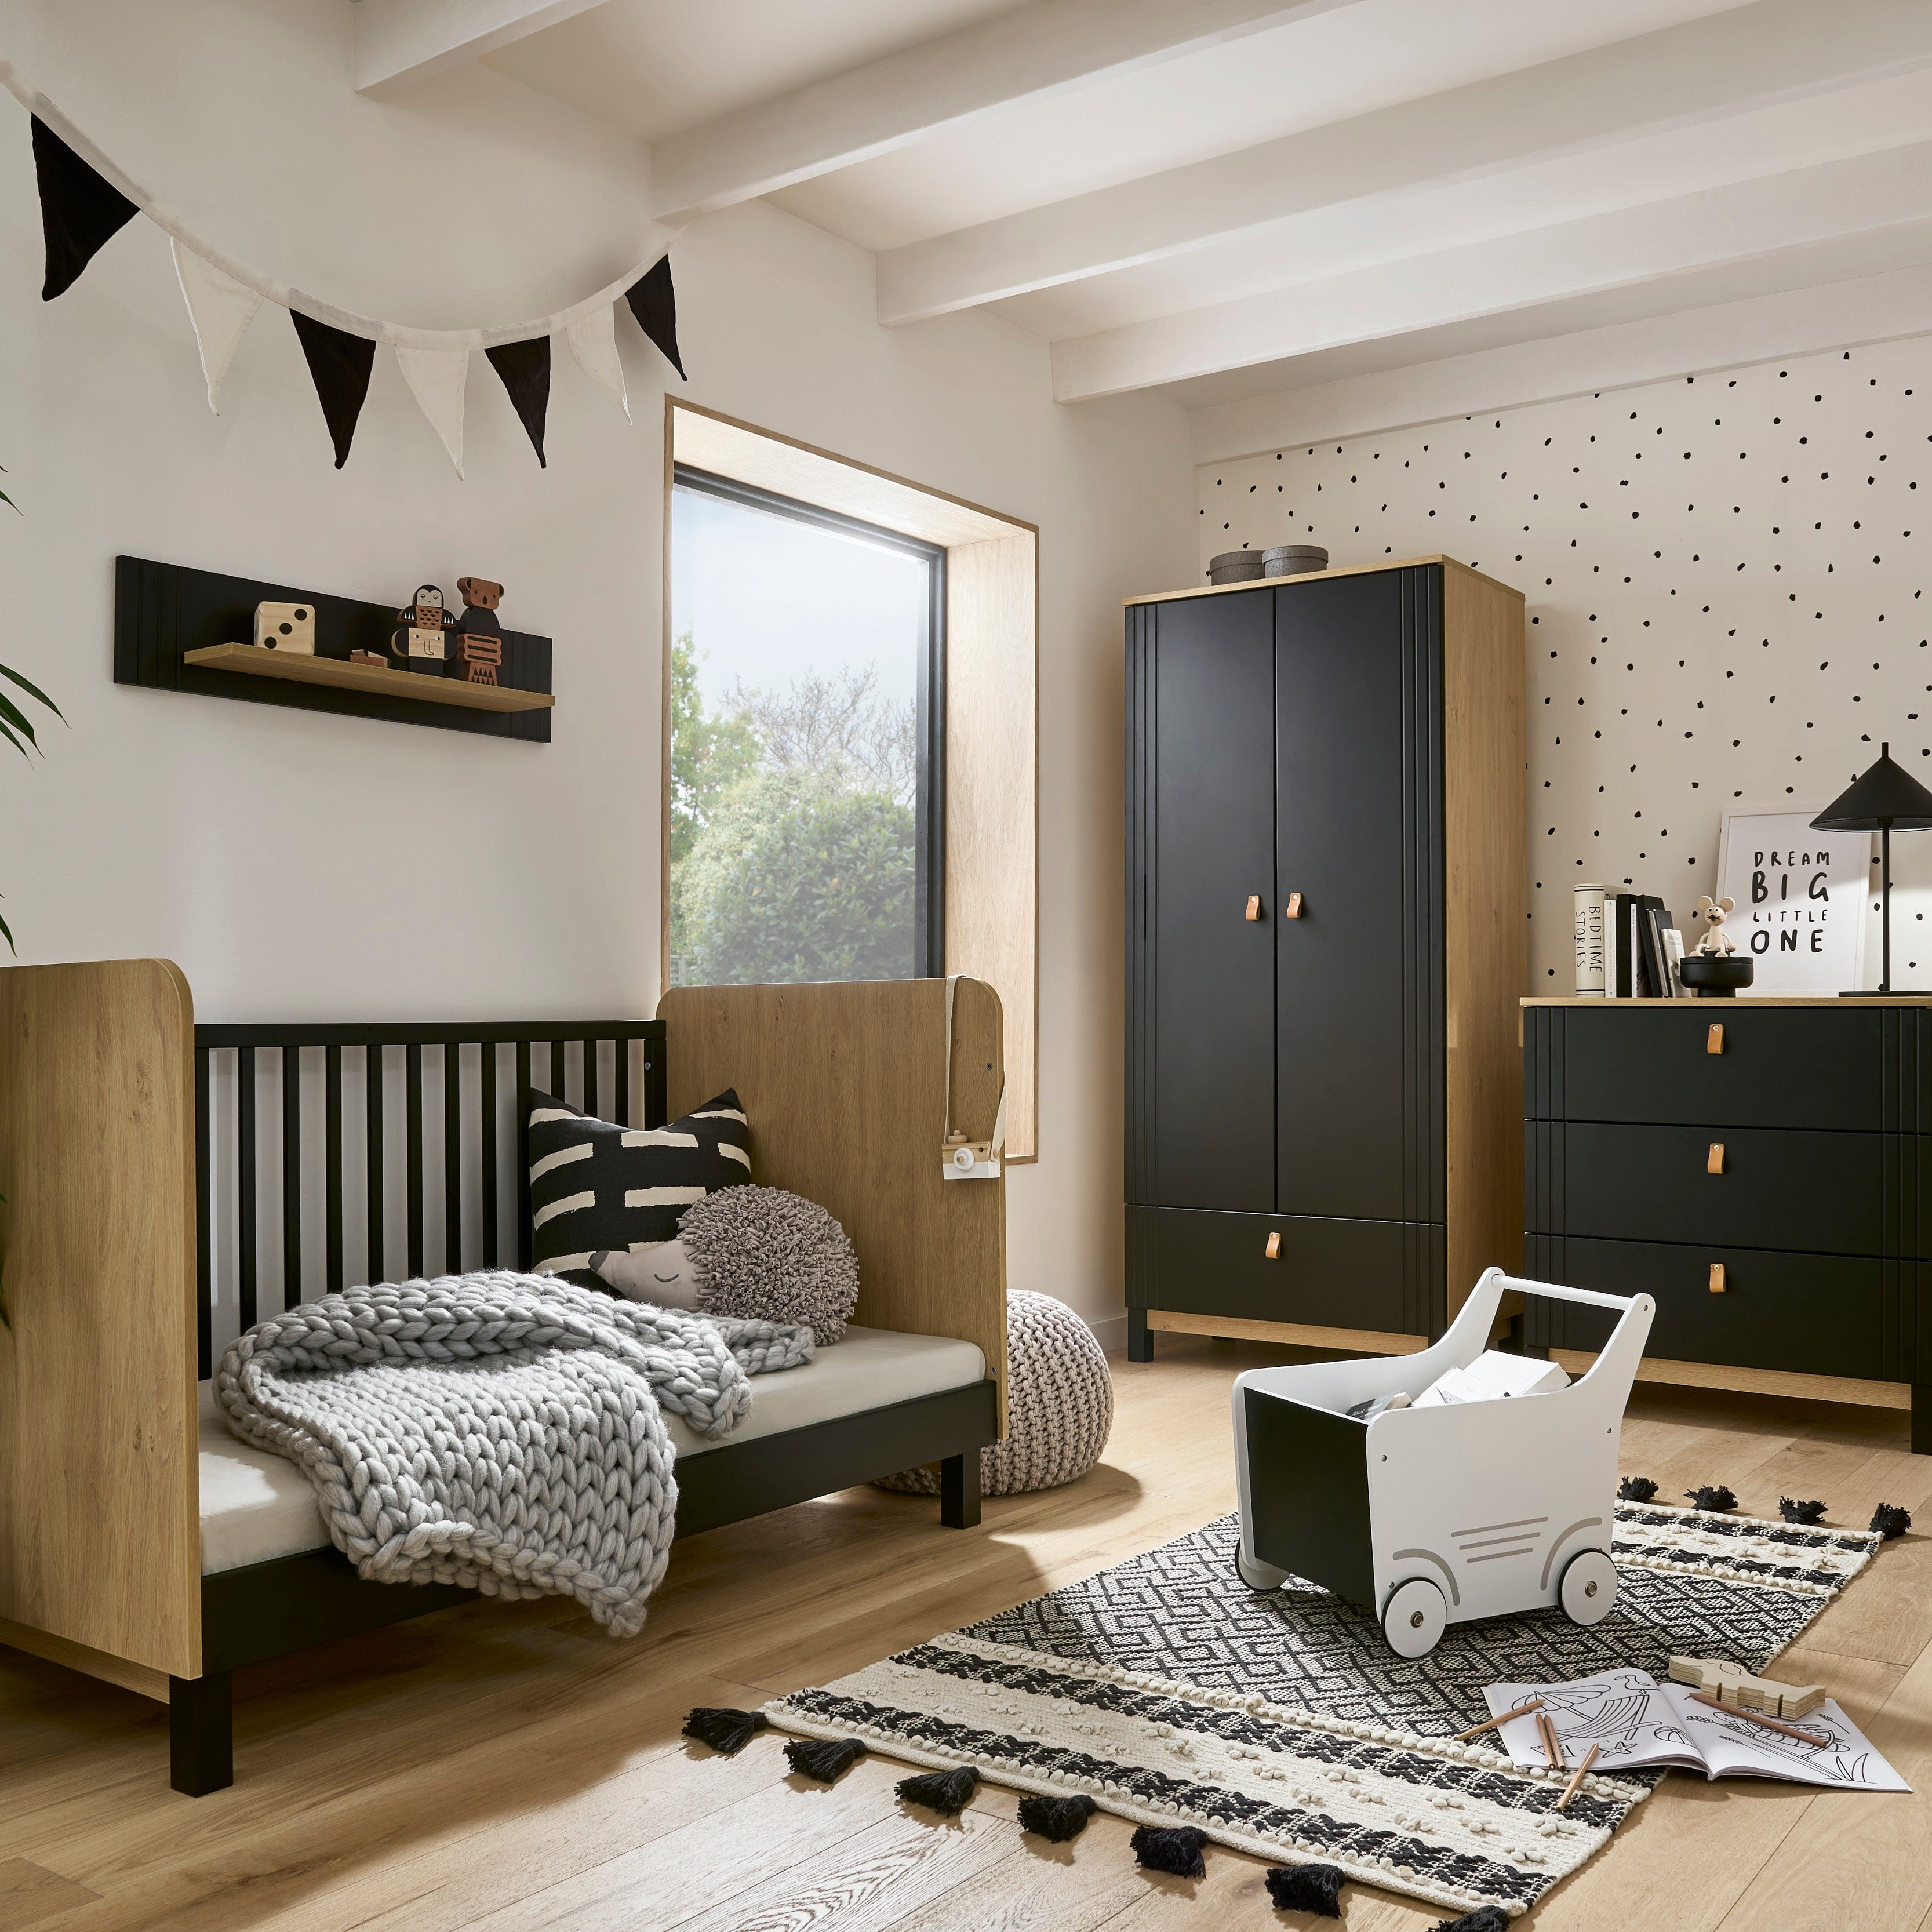 CuddleCo Rafi 3 Piece Room Set in Oak & Black Nursery Room Sets